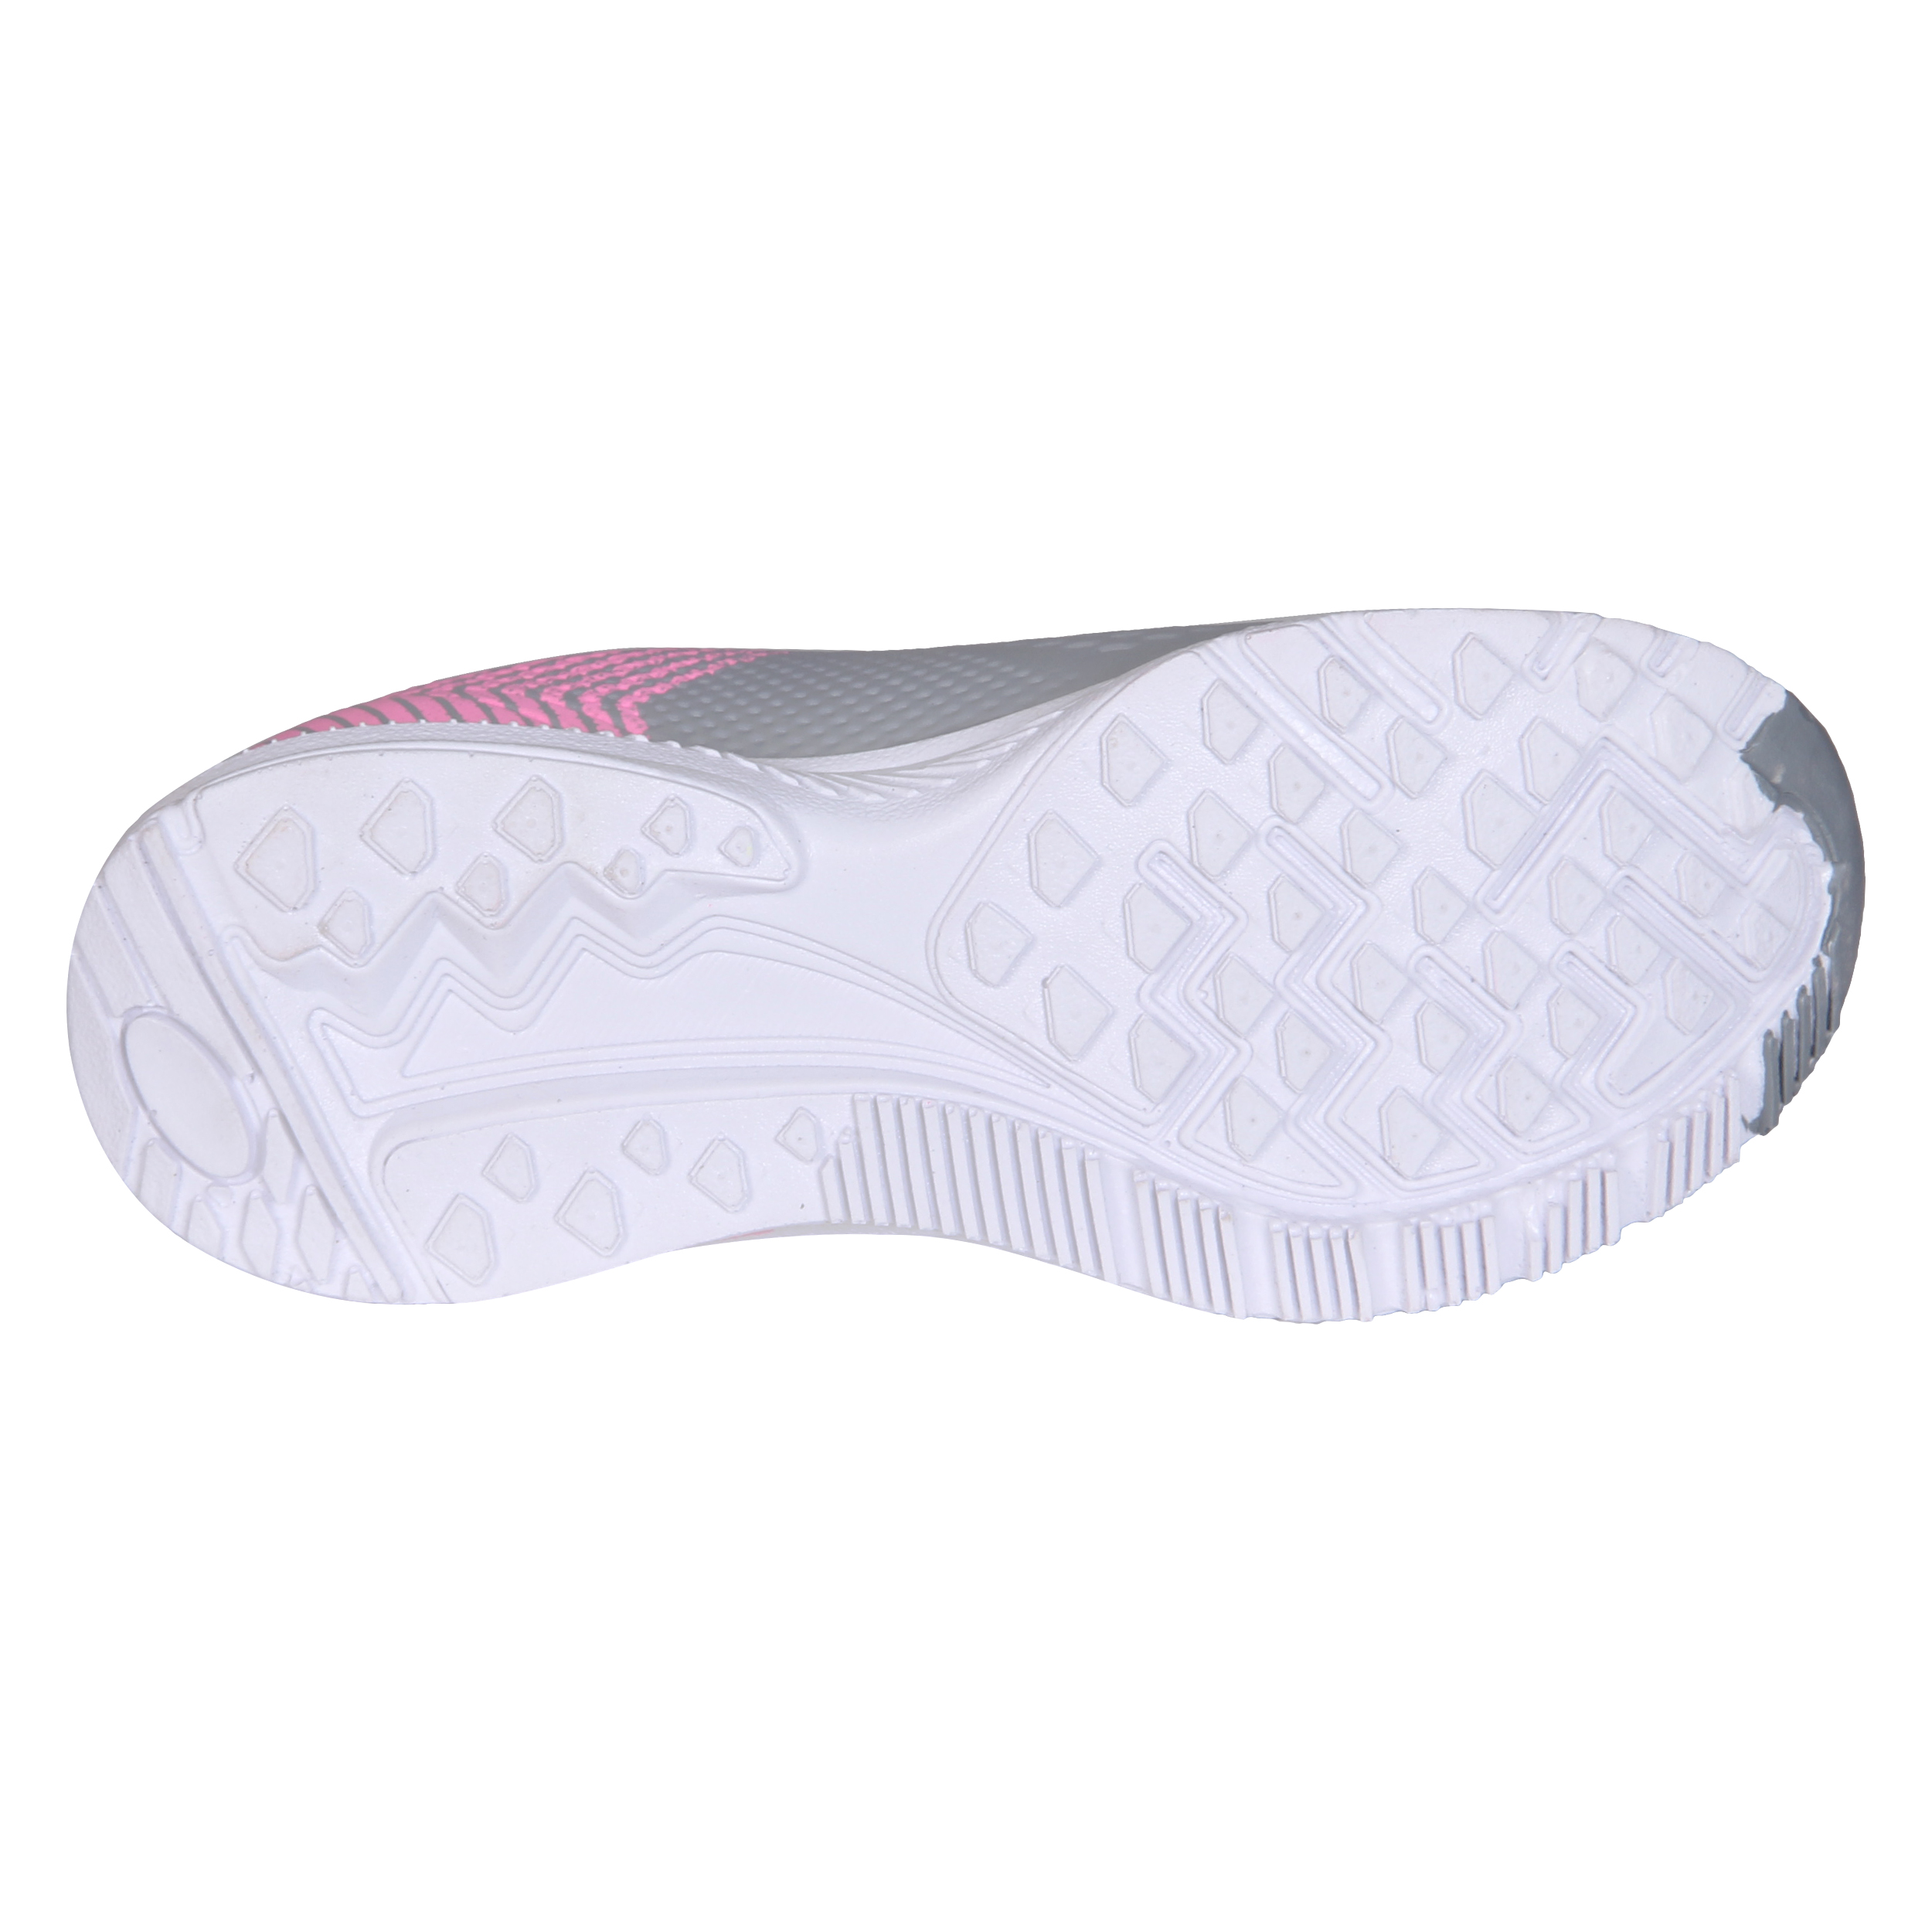   کفش مخصوص پیاده روی زنانه کد 88-P2400040